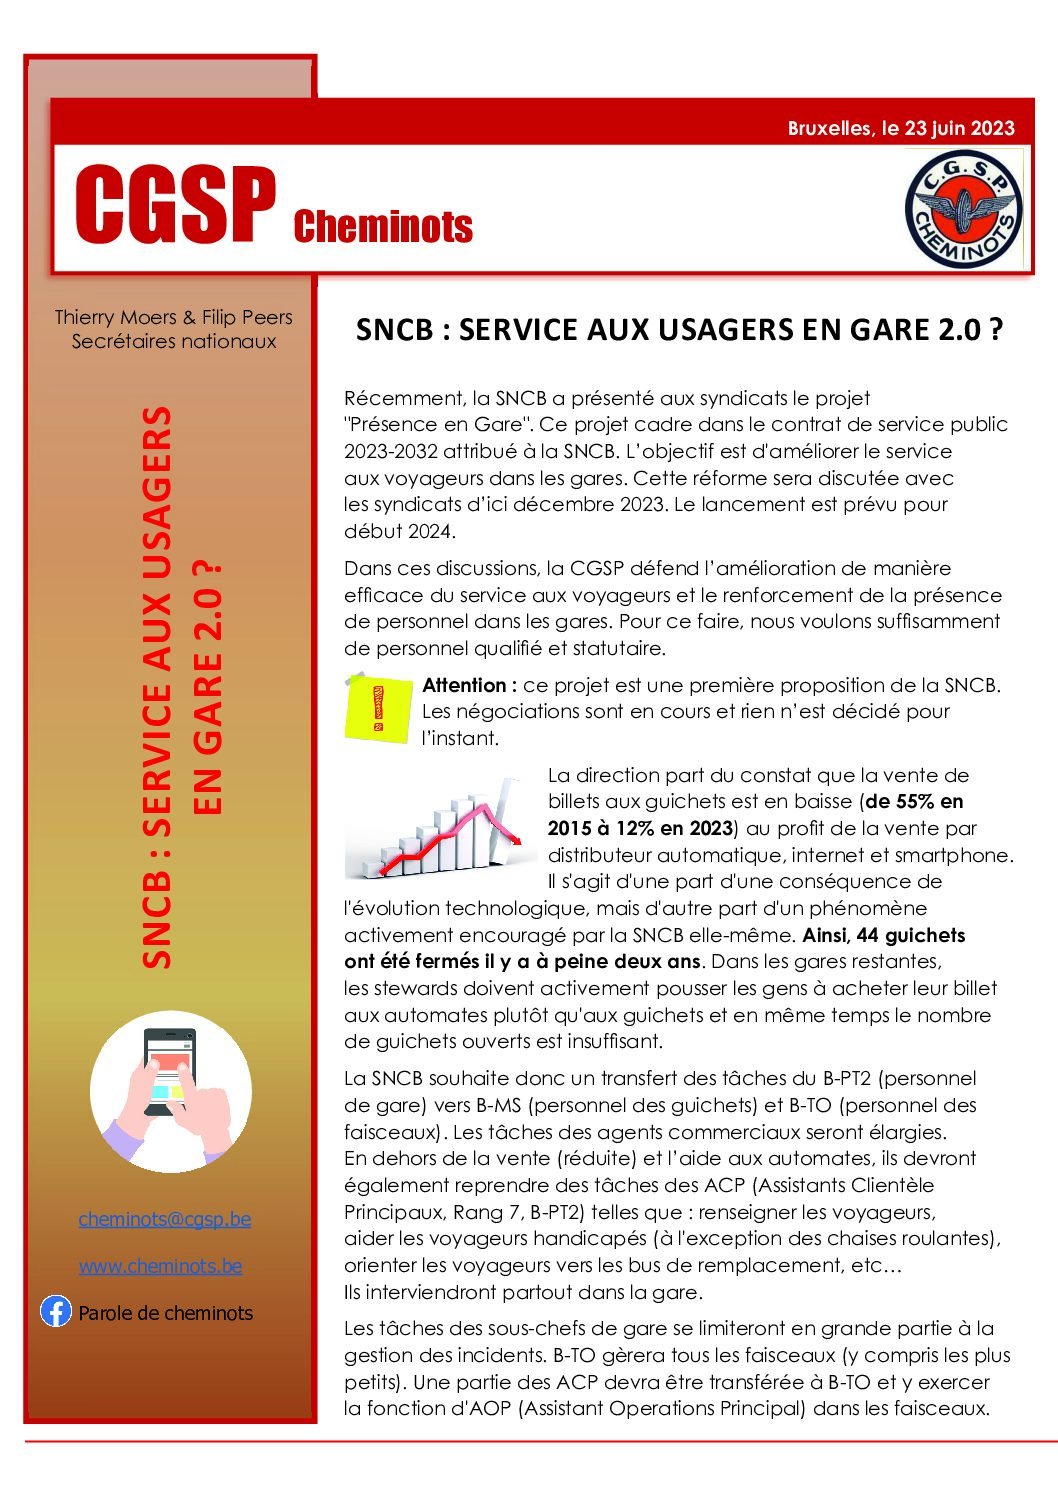 SNCB : SERVICE AUX USAGERS EN GARE 2.0 ?